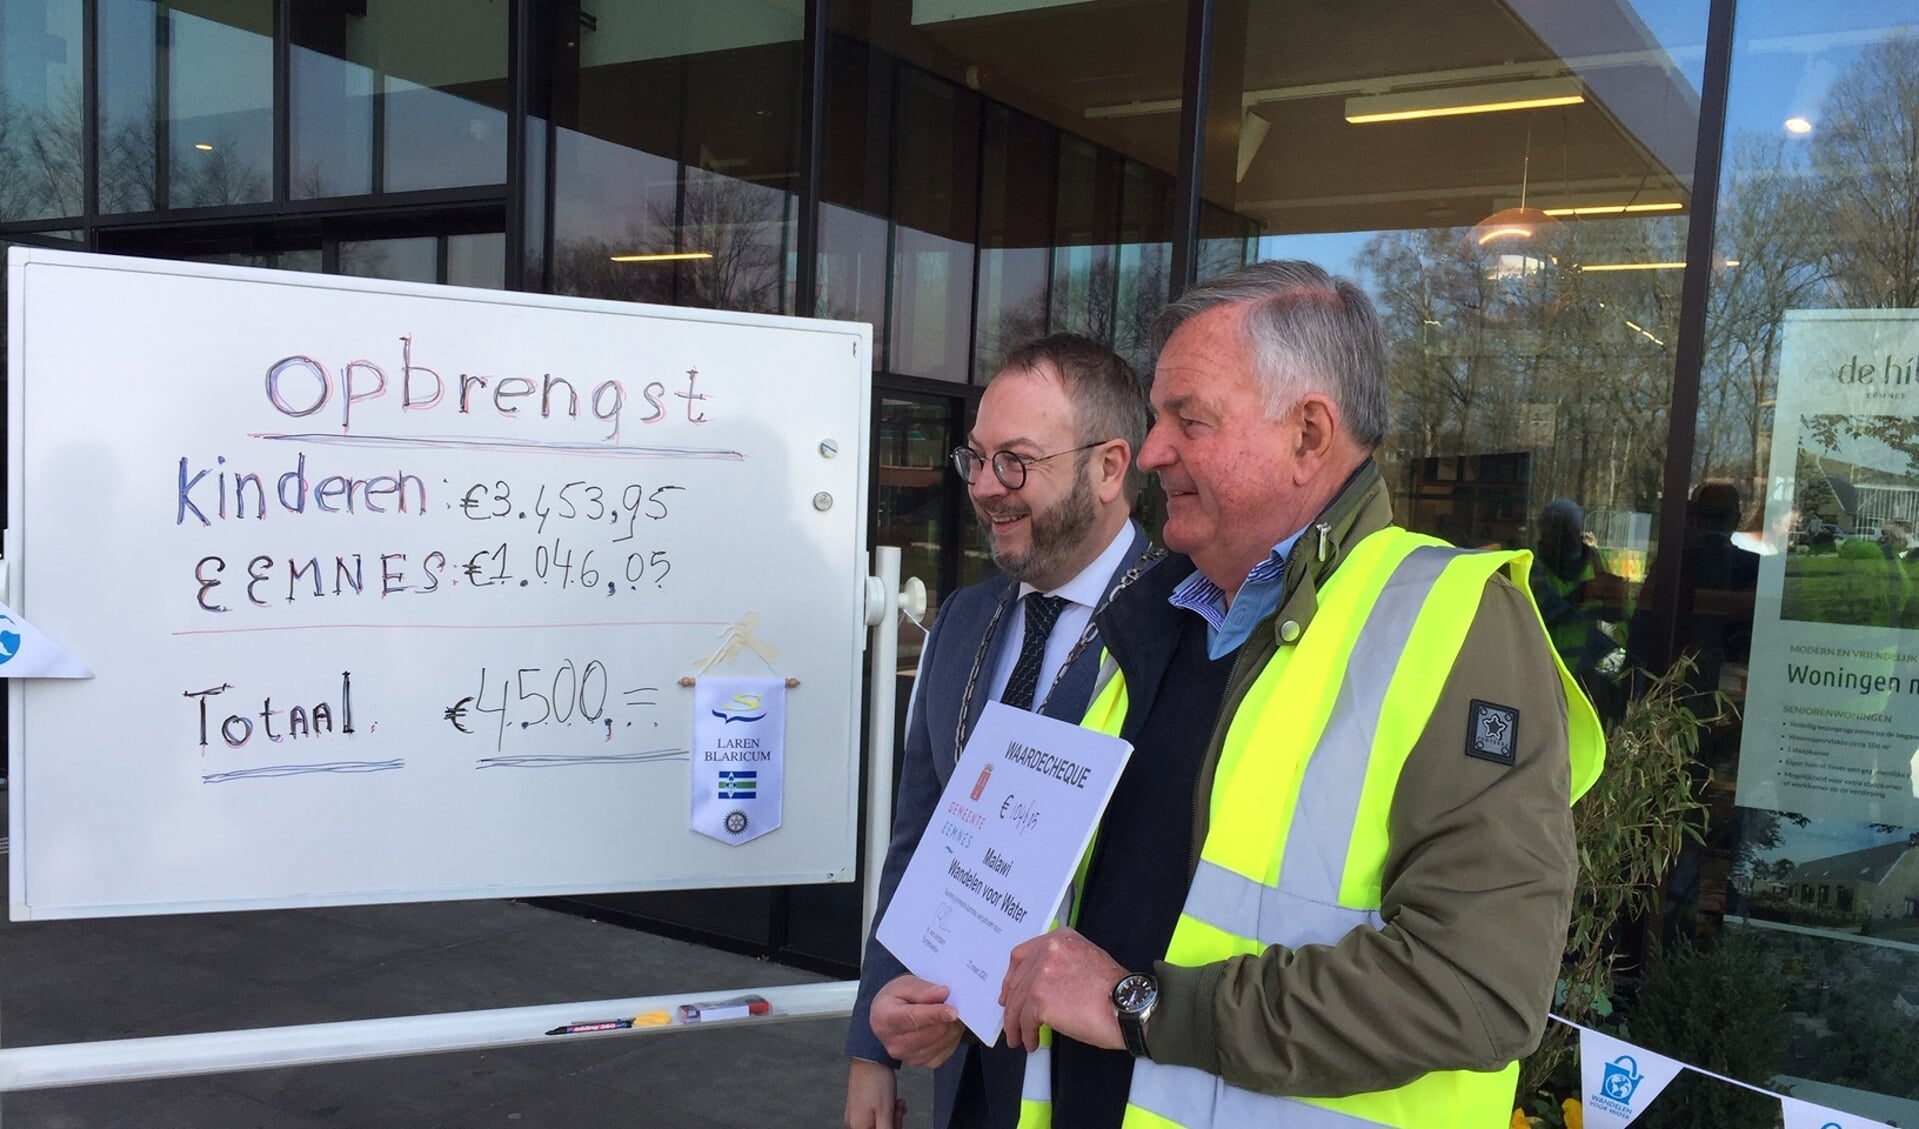 Burgemeester Roland van Benthem (links) en Pieter Verboom van Rotaryclub Laren-Blaricum maken de opbrengst bekend, die wordt aangevuld tot € 4.500